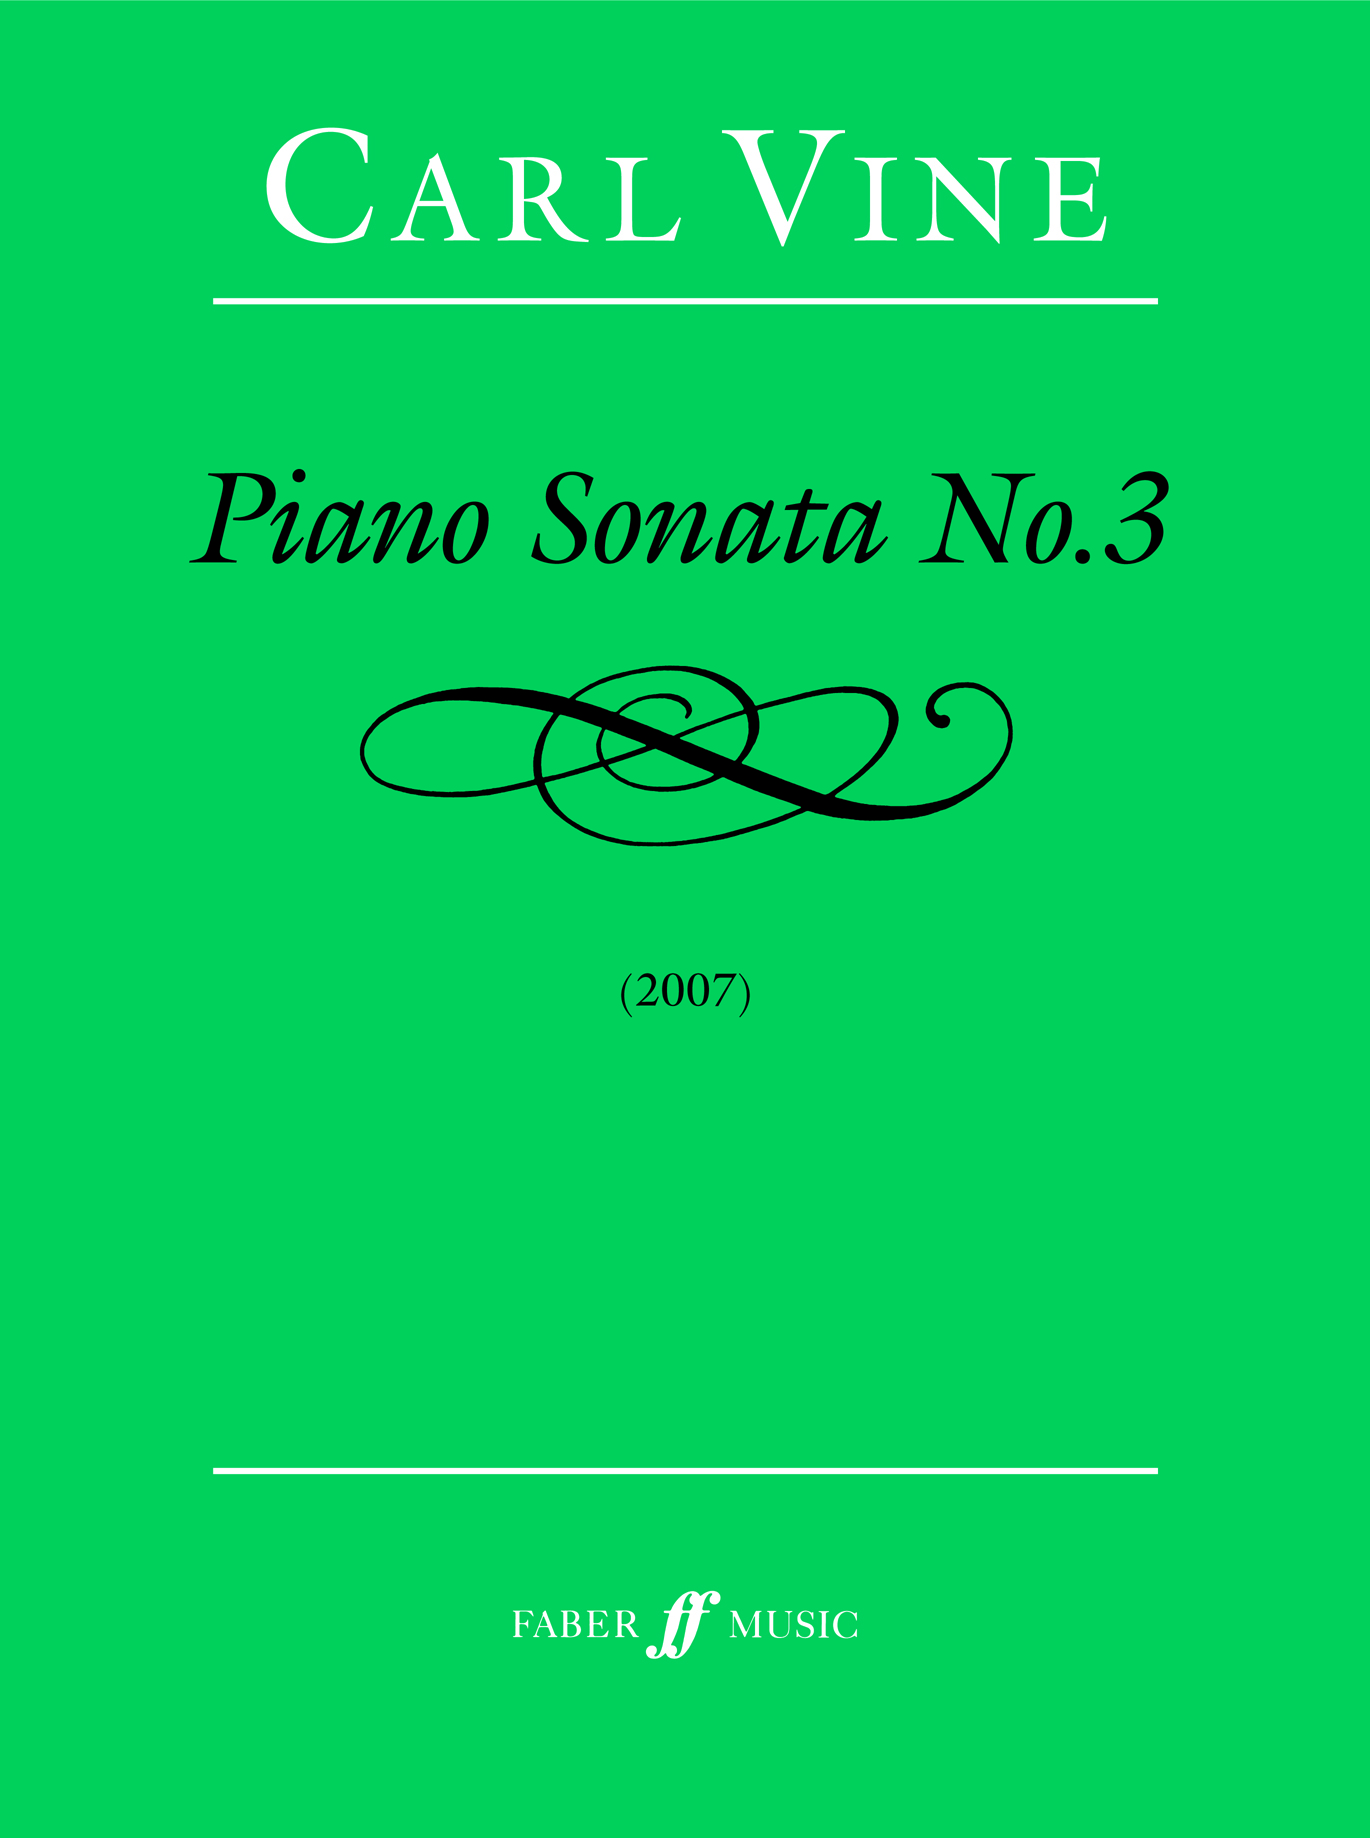 Piano Sonata #3 (VINE CARL)